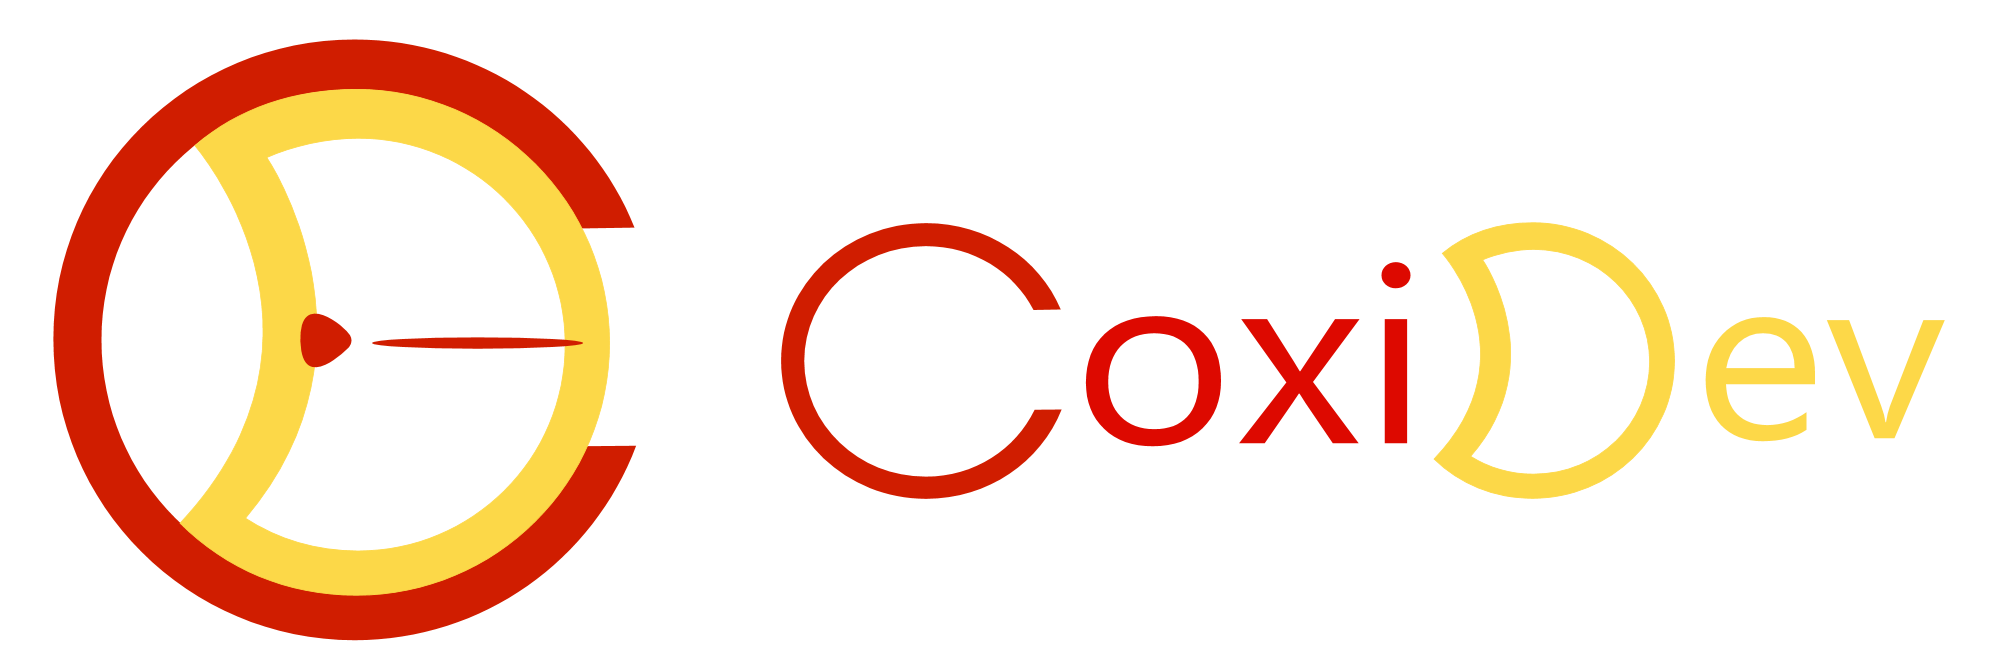 Coxidev